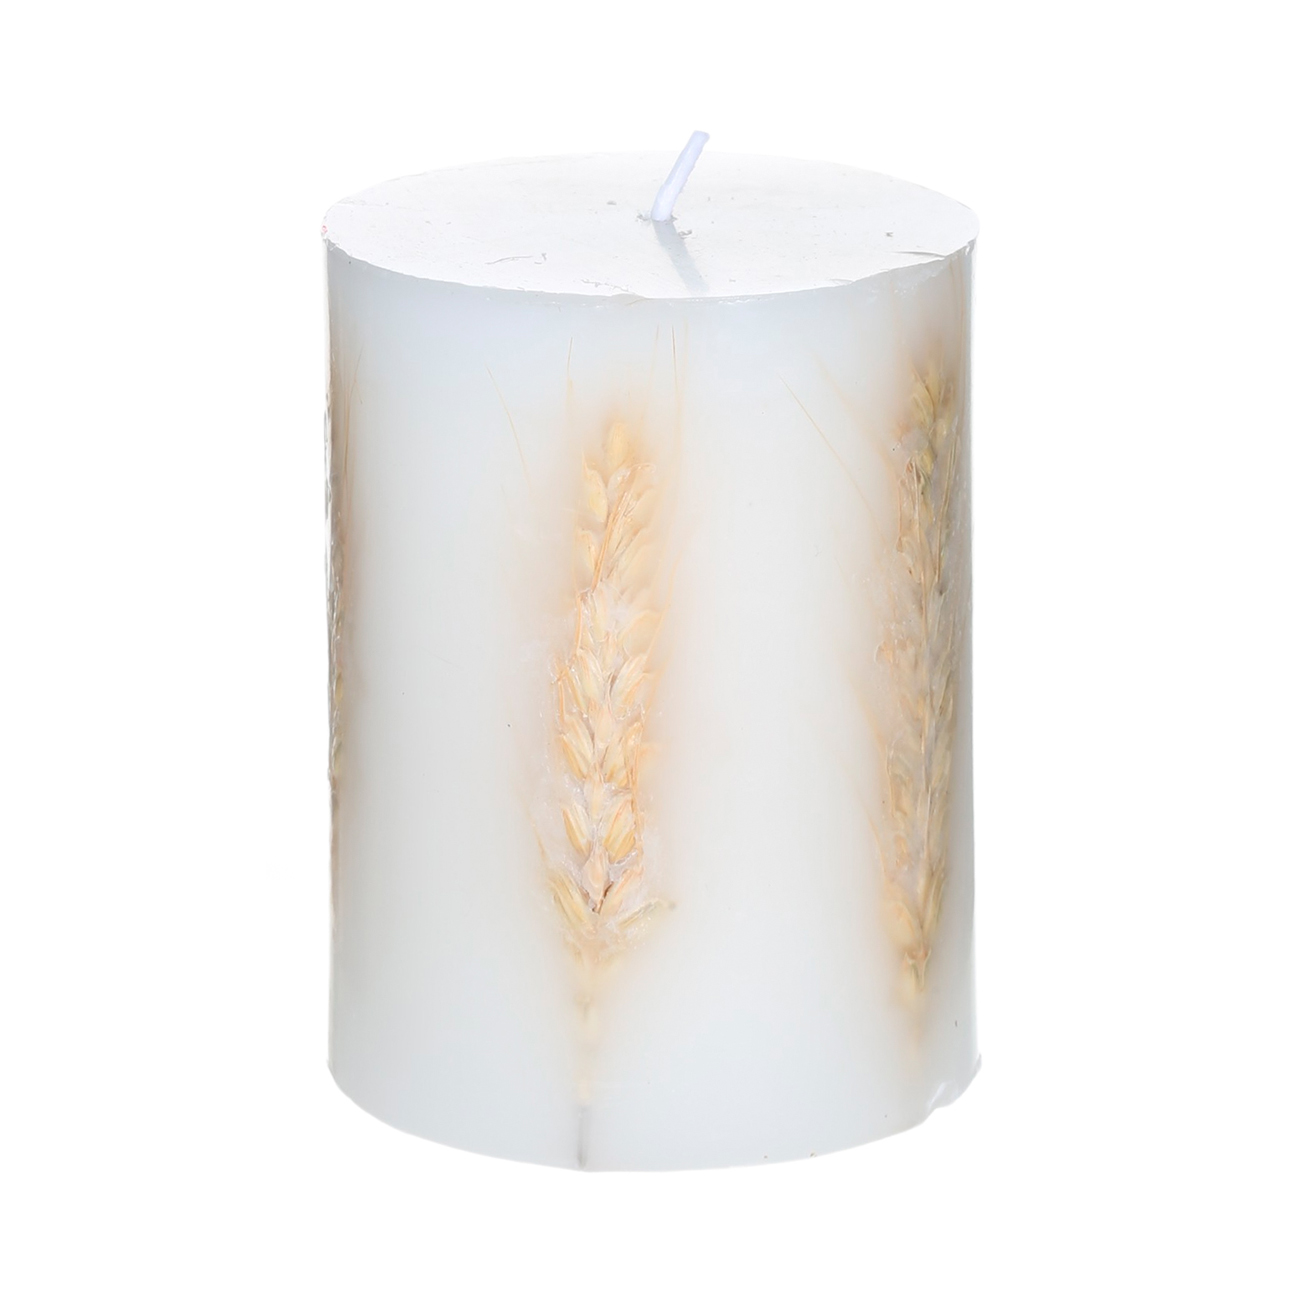 Свеча, 9 см, с сухоцветами, цилиндрическая, белая, Колоски, Autumn light - фото 1